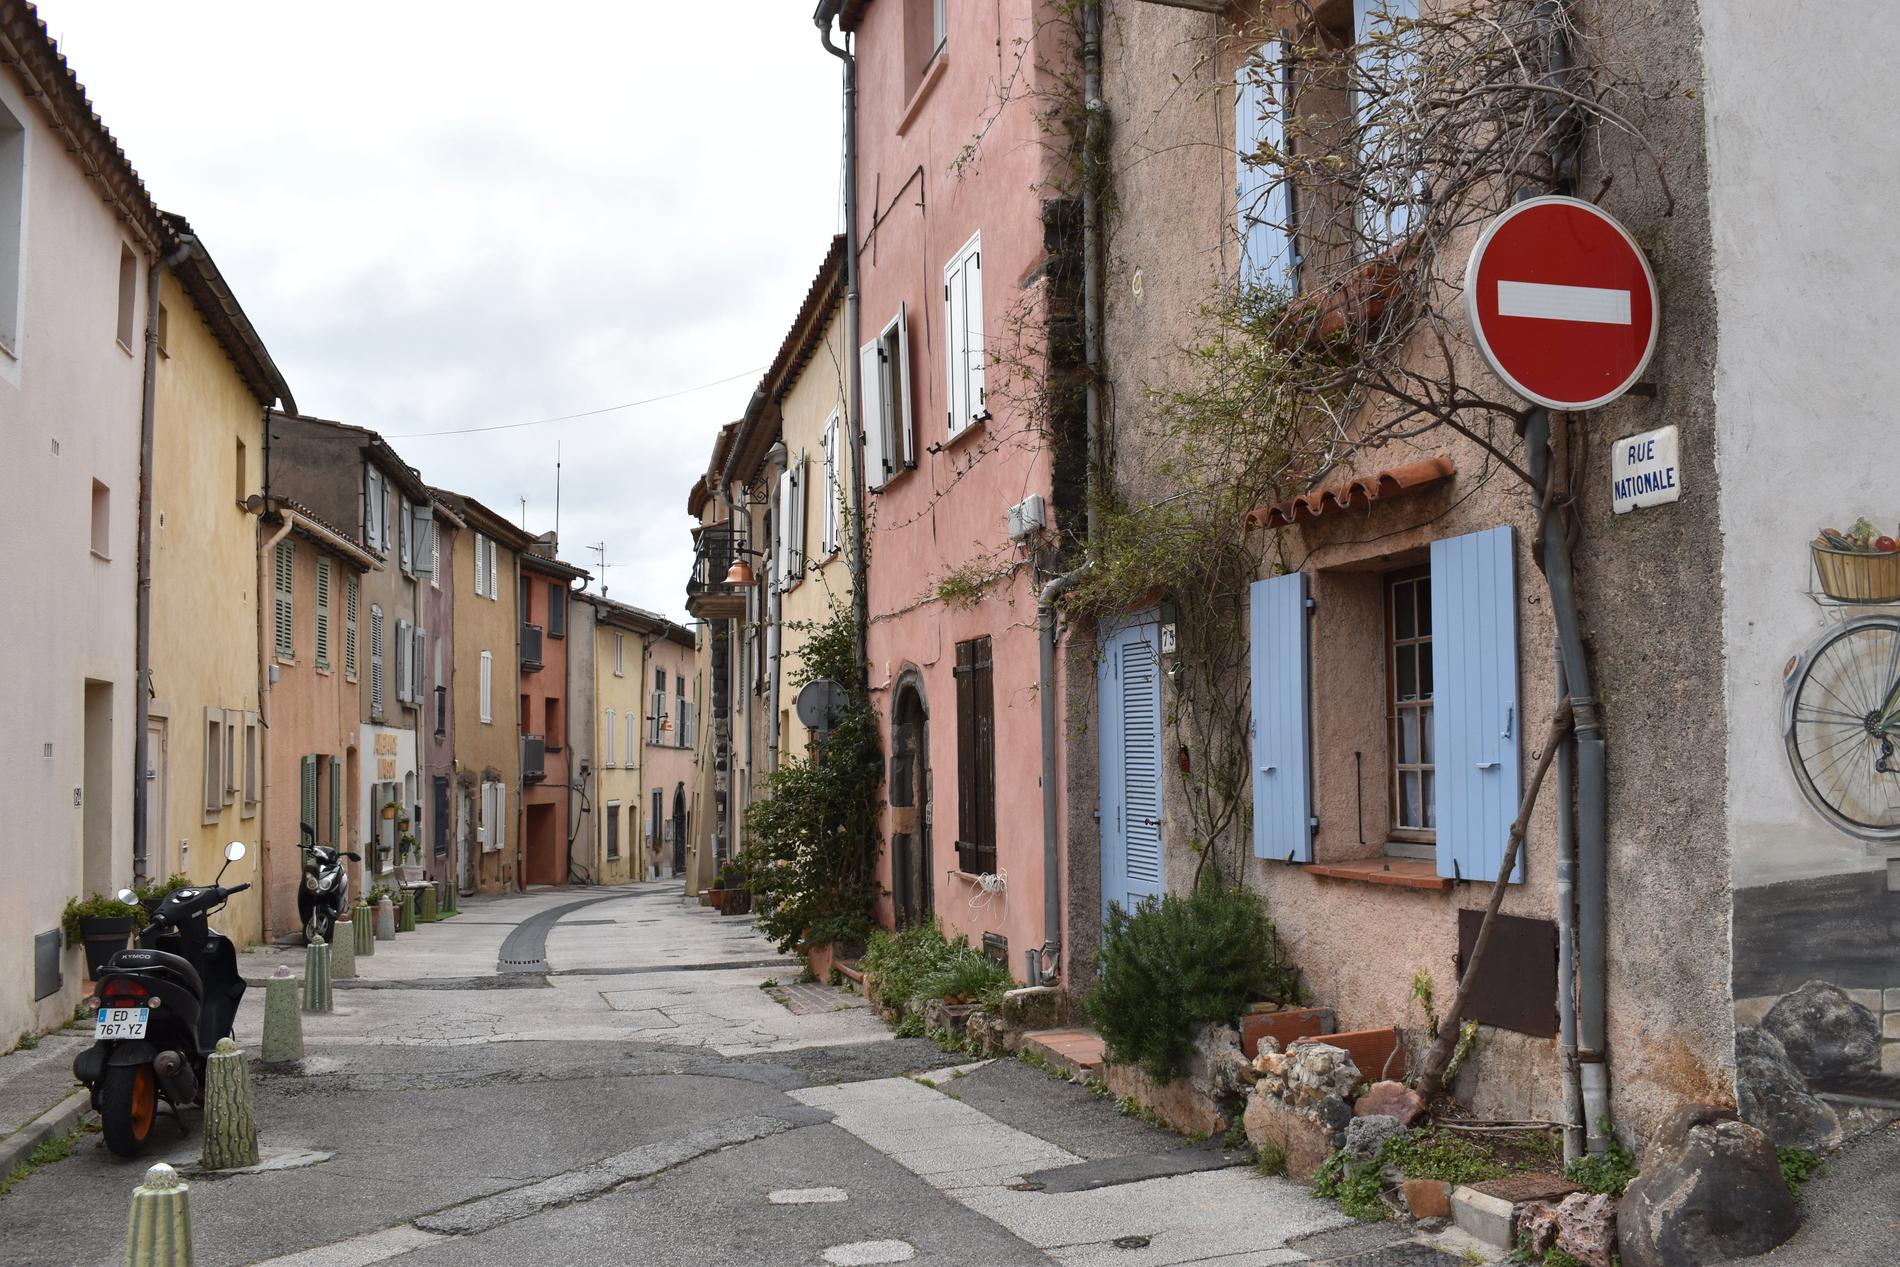 Rue nationale, Nationalgatan, i den äldre delen av Cogolin. Kommunen har omkring 12 000 invånare och sträcker sig i en smal remsa ned till Medelhavet.